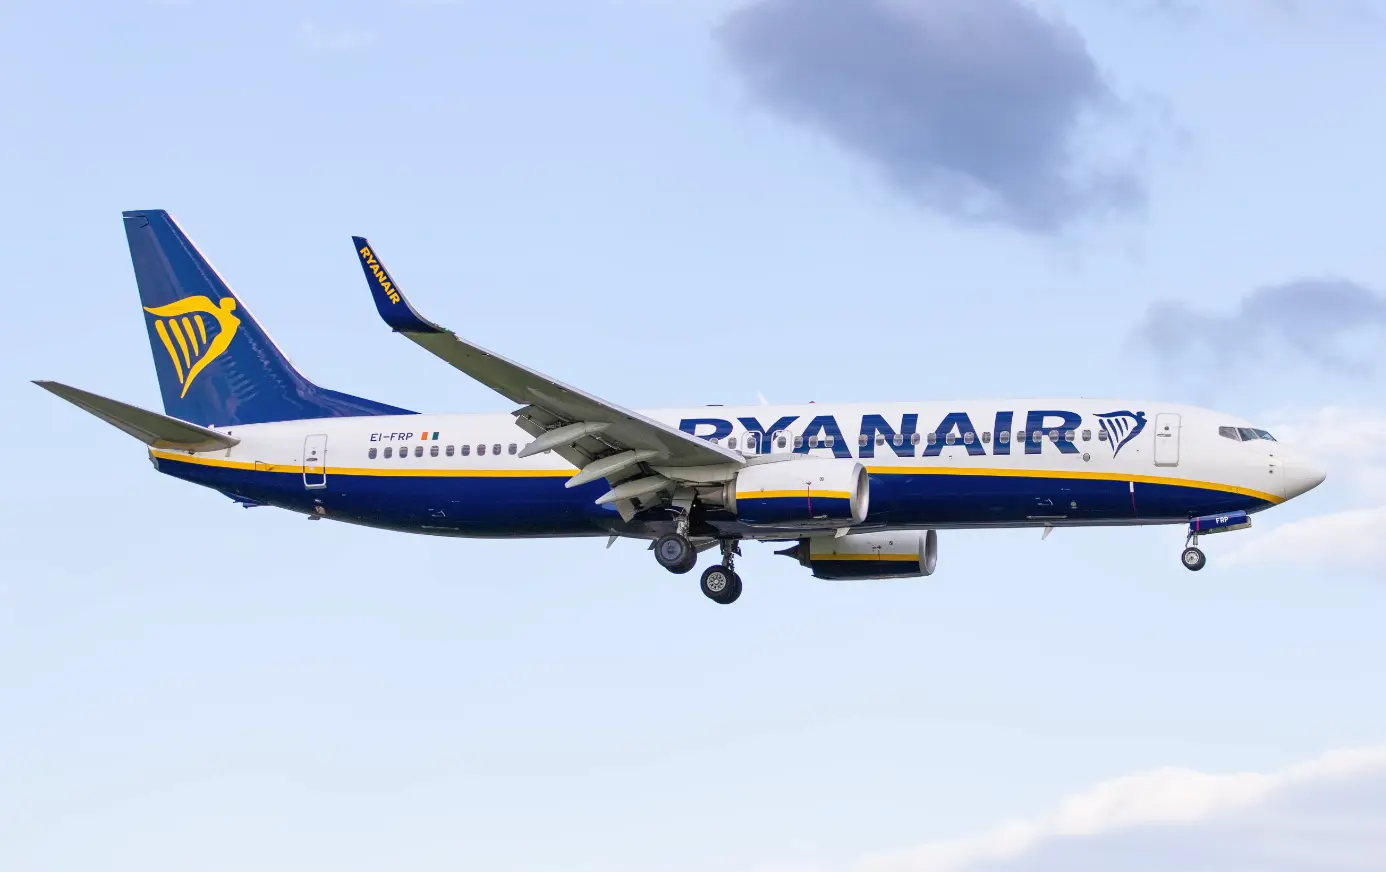 A Boeing 737-800 Next Generation flown by Ryanair